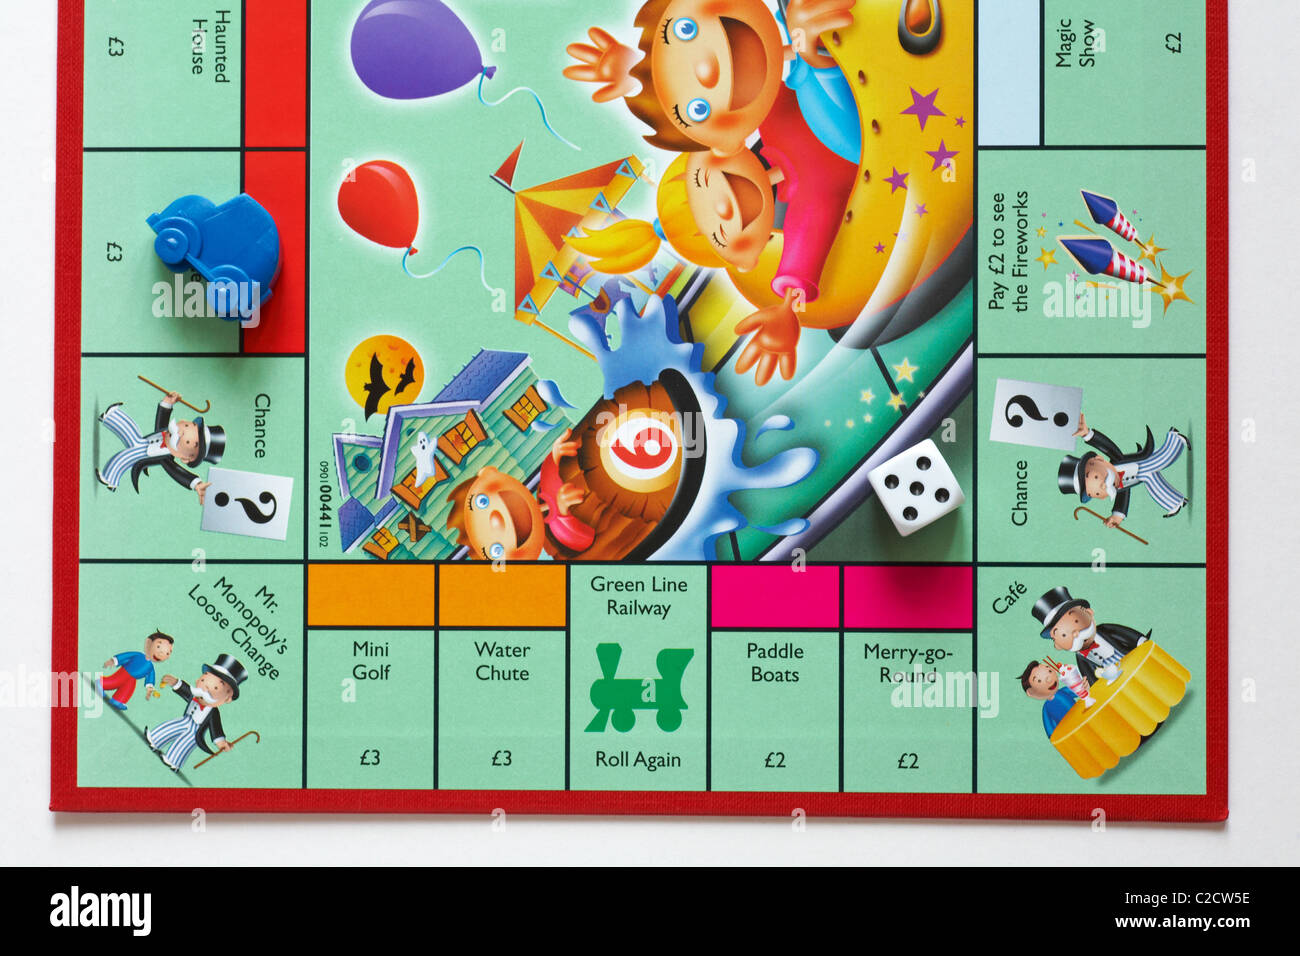 https://c8.alamy.com/comp/C2CW5E/close-up-of-part-of-junior-monopoly-board-game-for-children-C2CW5E.jpg